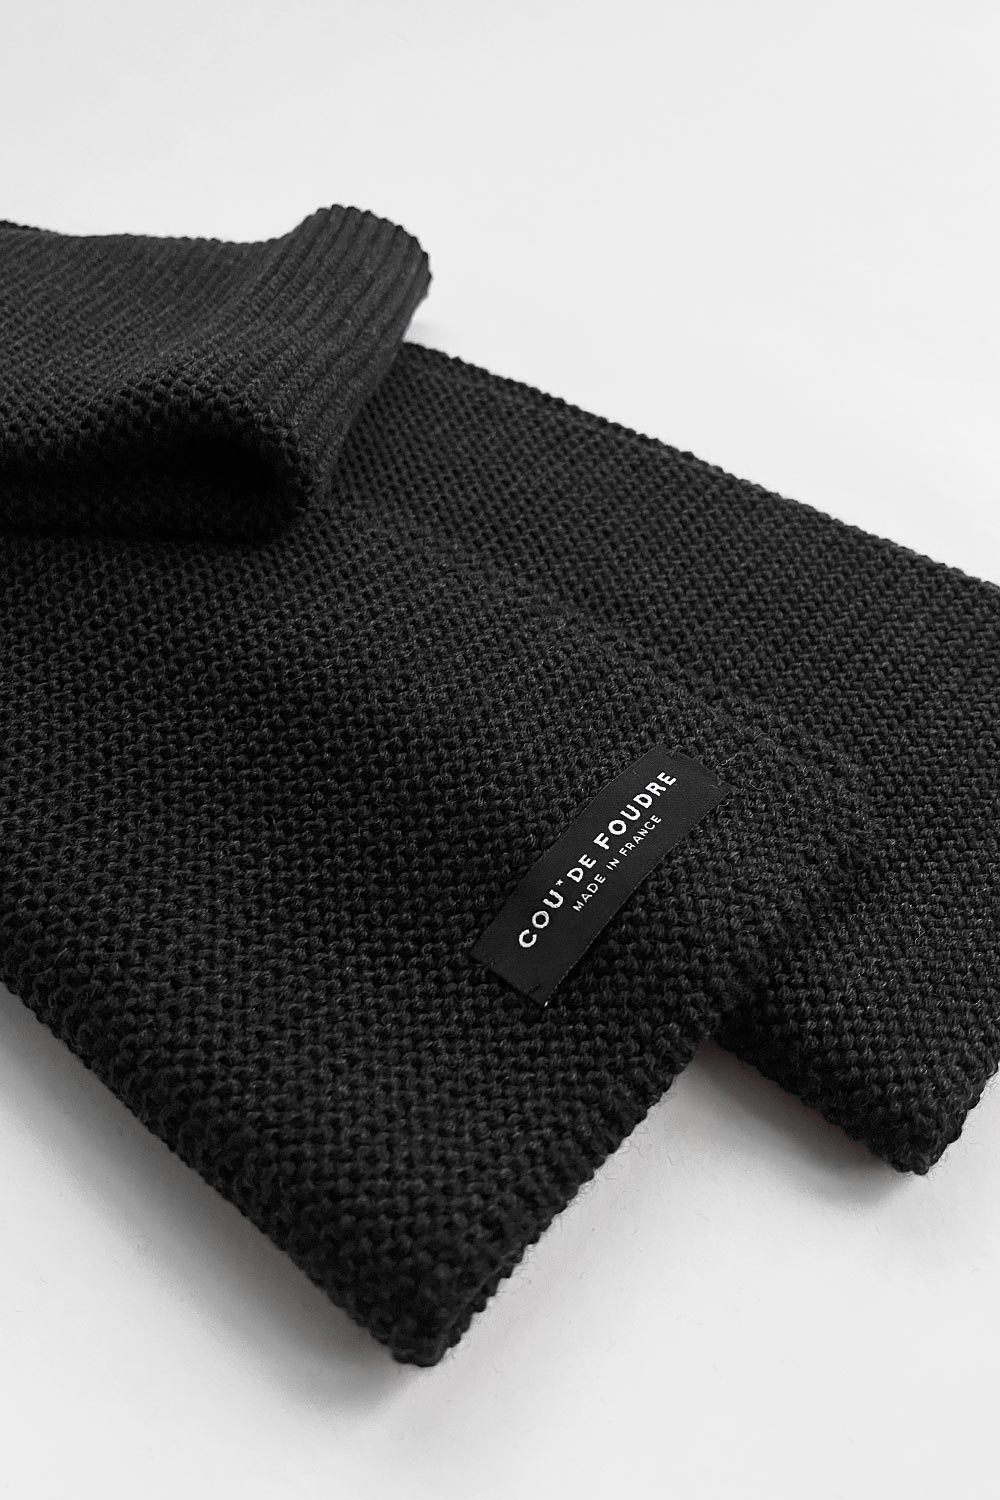 écharpe made in France, écharpe éco-responsable, écharpe éthique